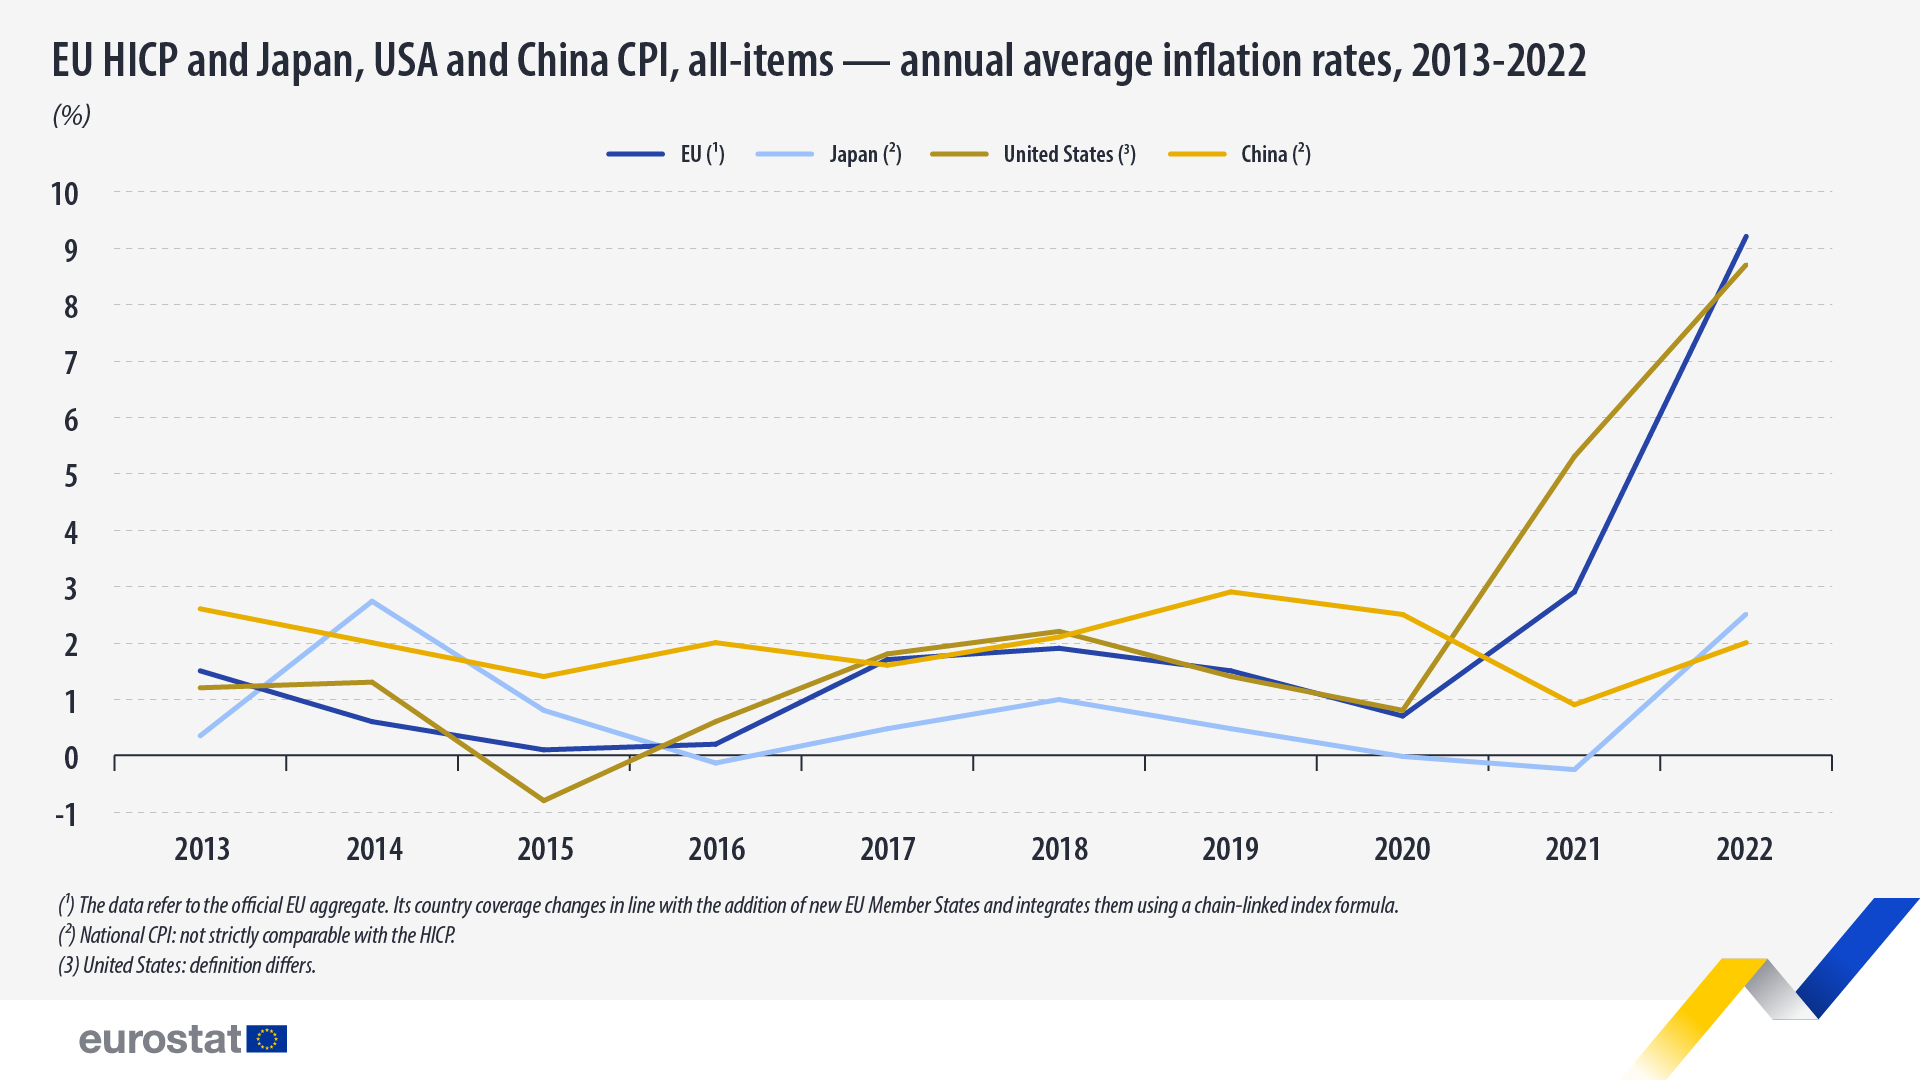 トレンドライン グラフ: EU HICP、日本、米国、中国の CPI、すべての項目 - 年平均インフレ率、2013 ～ 2022 年 (%)